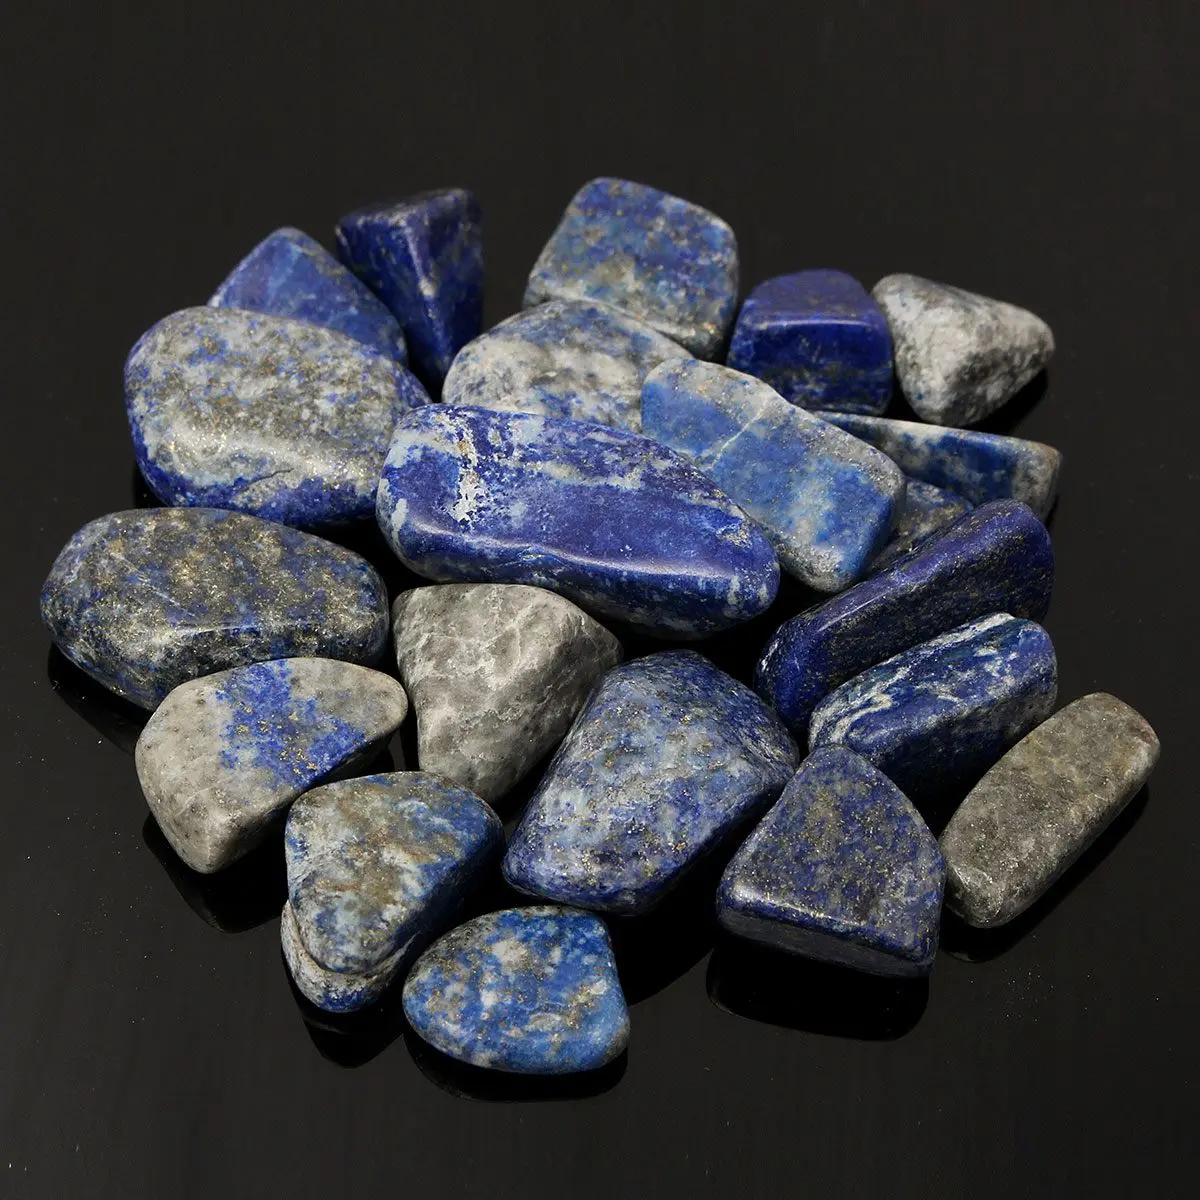 50 г натуральный голубой ляпис Лазурит Камень необработанный камень образец кристаллического минерала Исцеление драгоценный камень для дома аквариум Декор ремесла